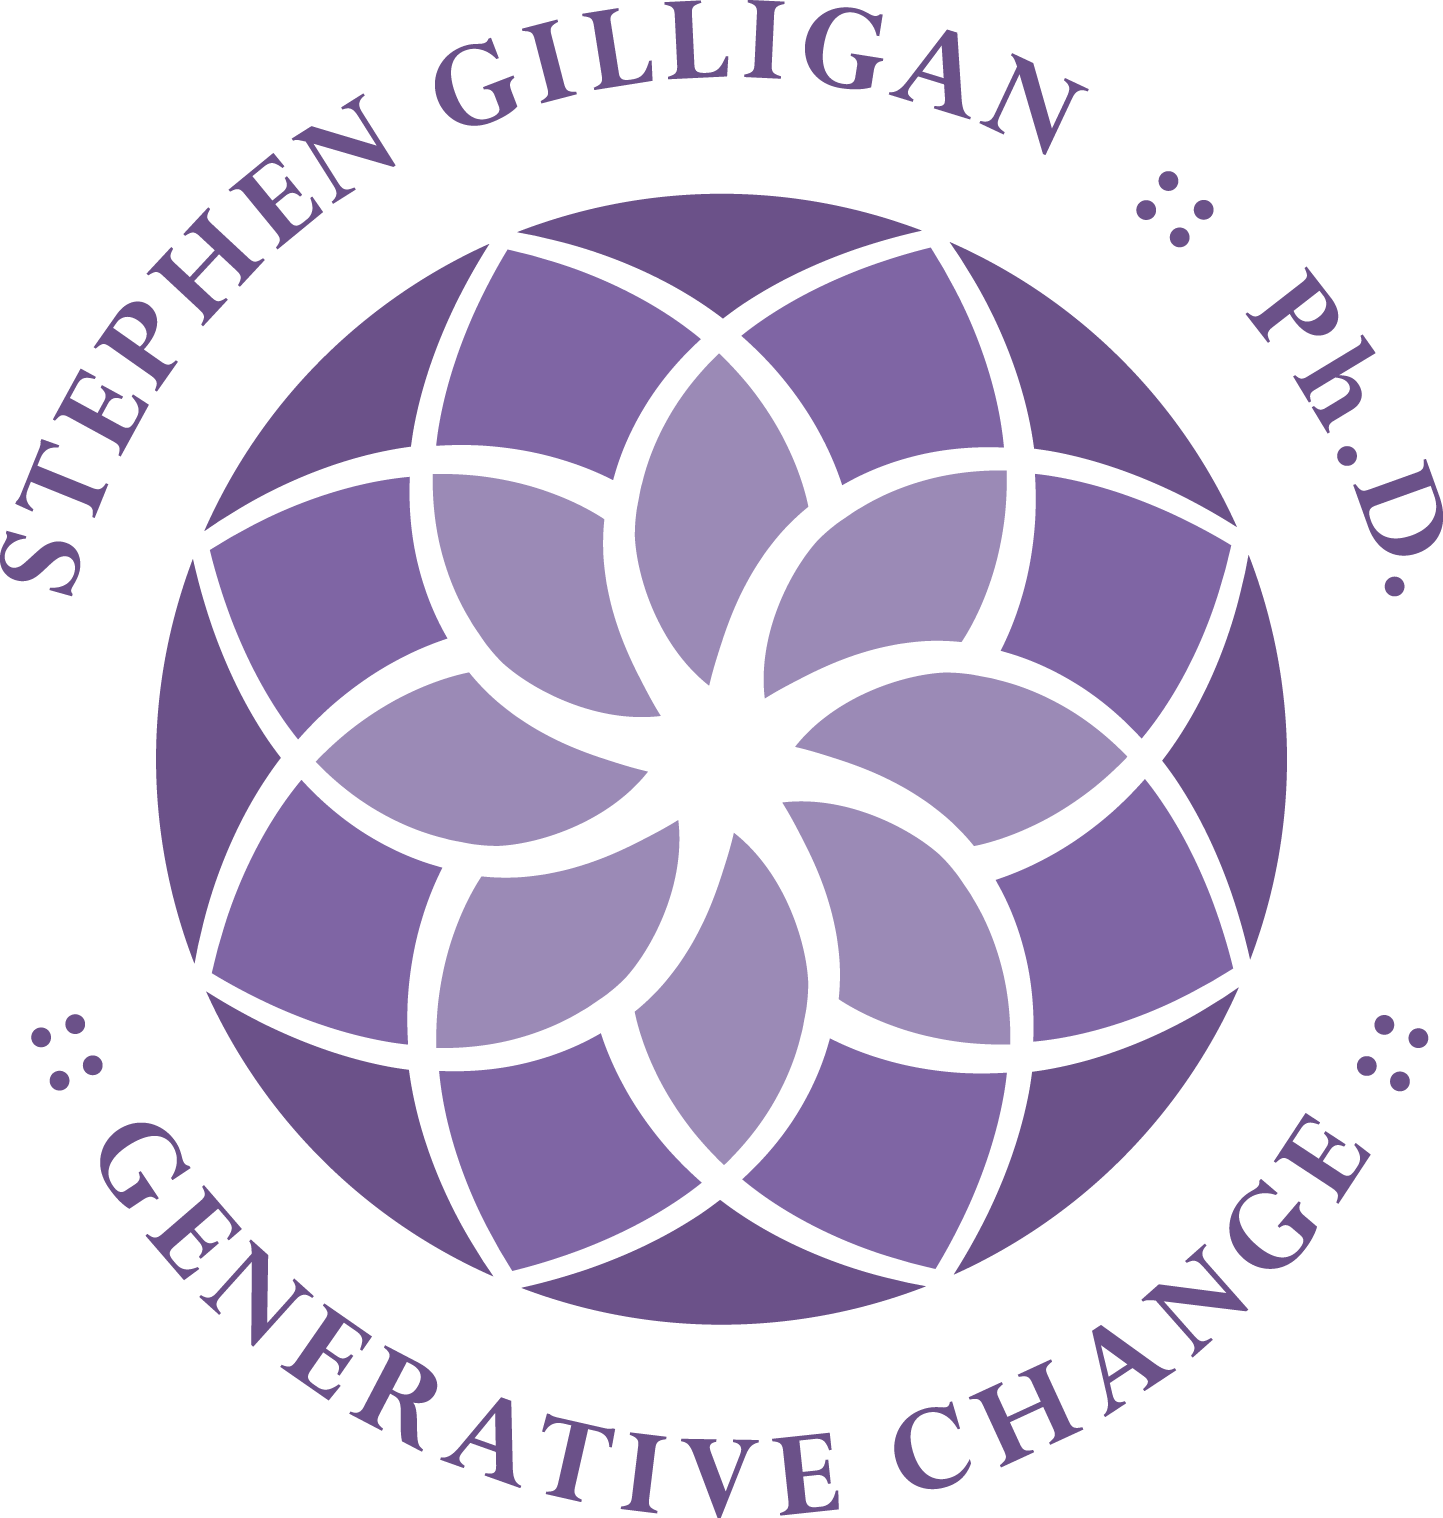 Curriculum Vitae Stephen Gilligan